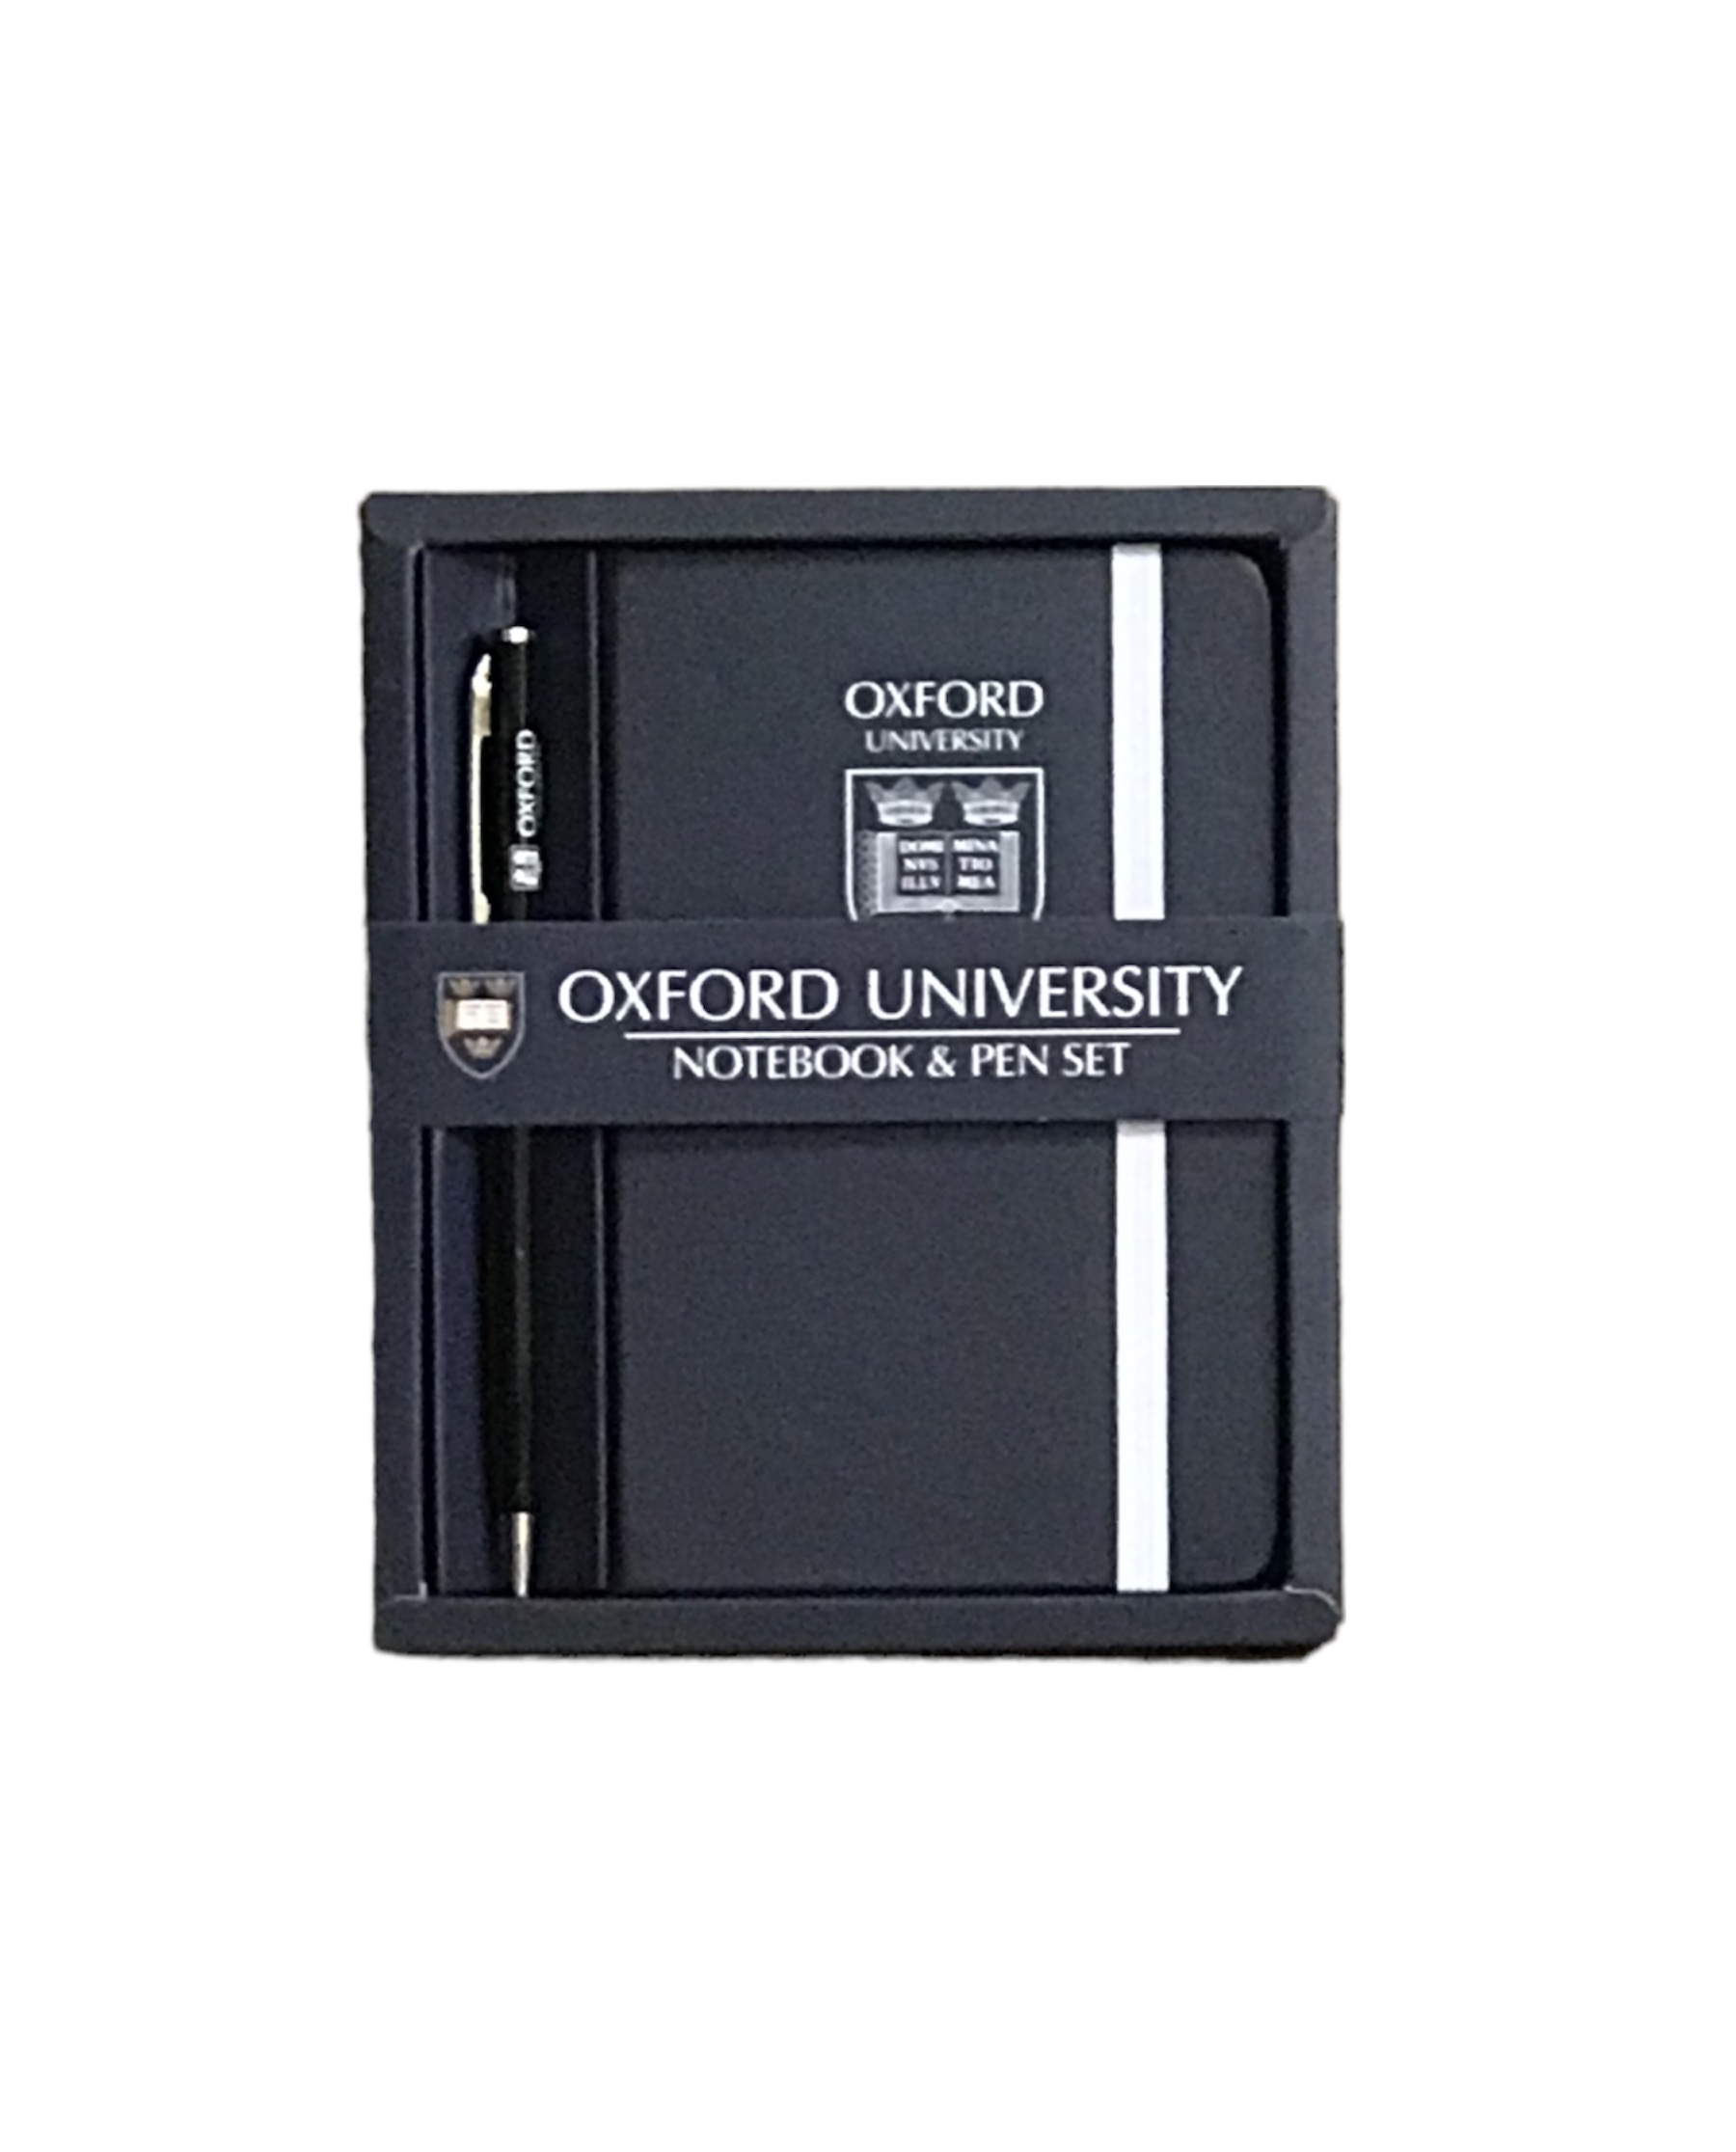 Oxford University Notebook, Oxford Notebook